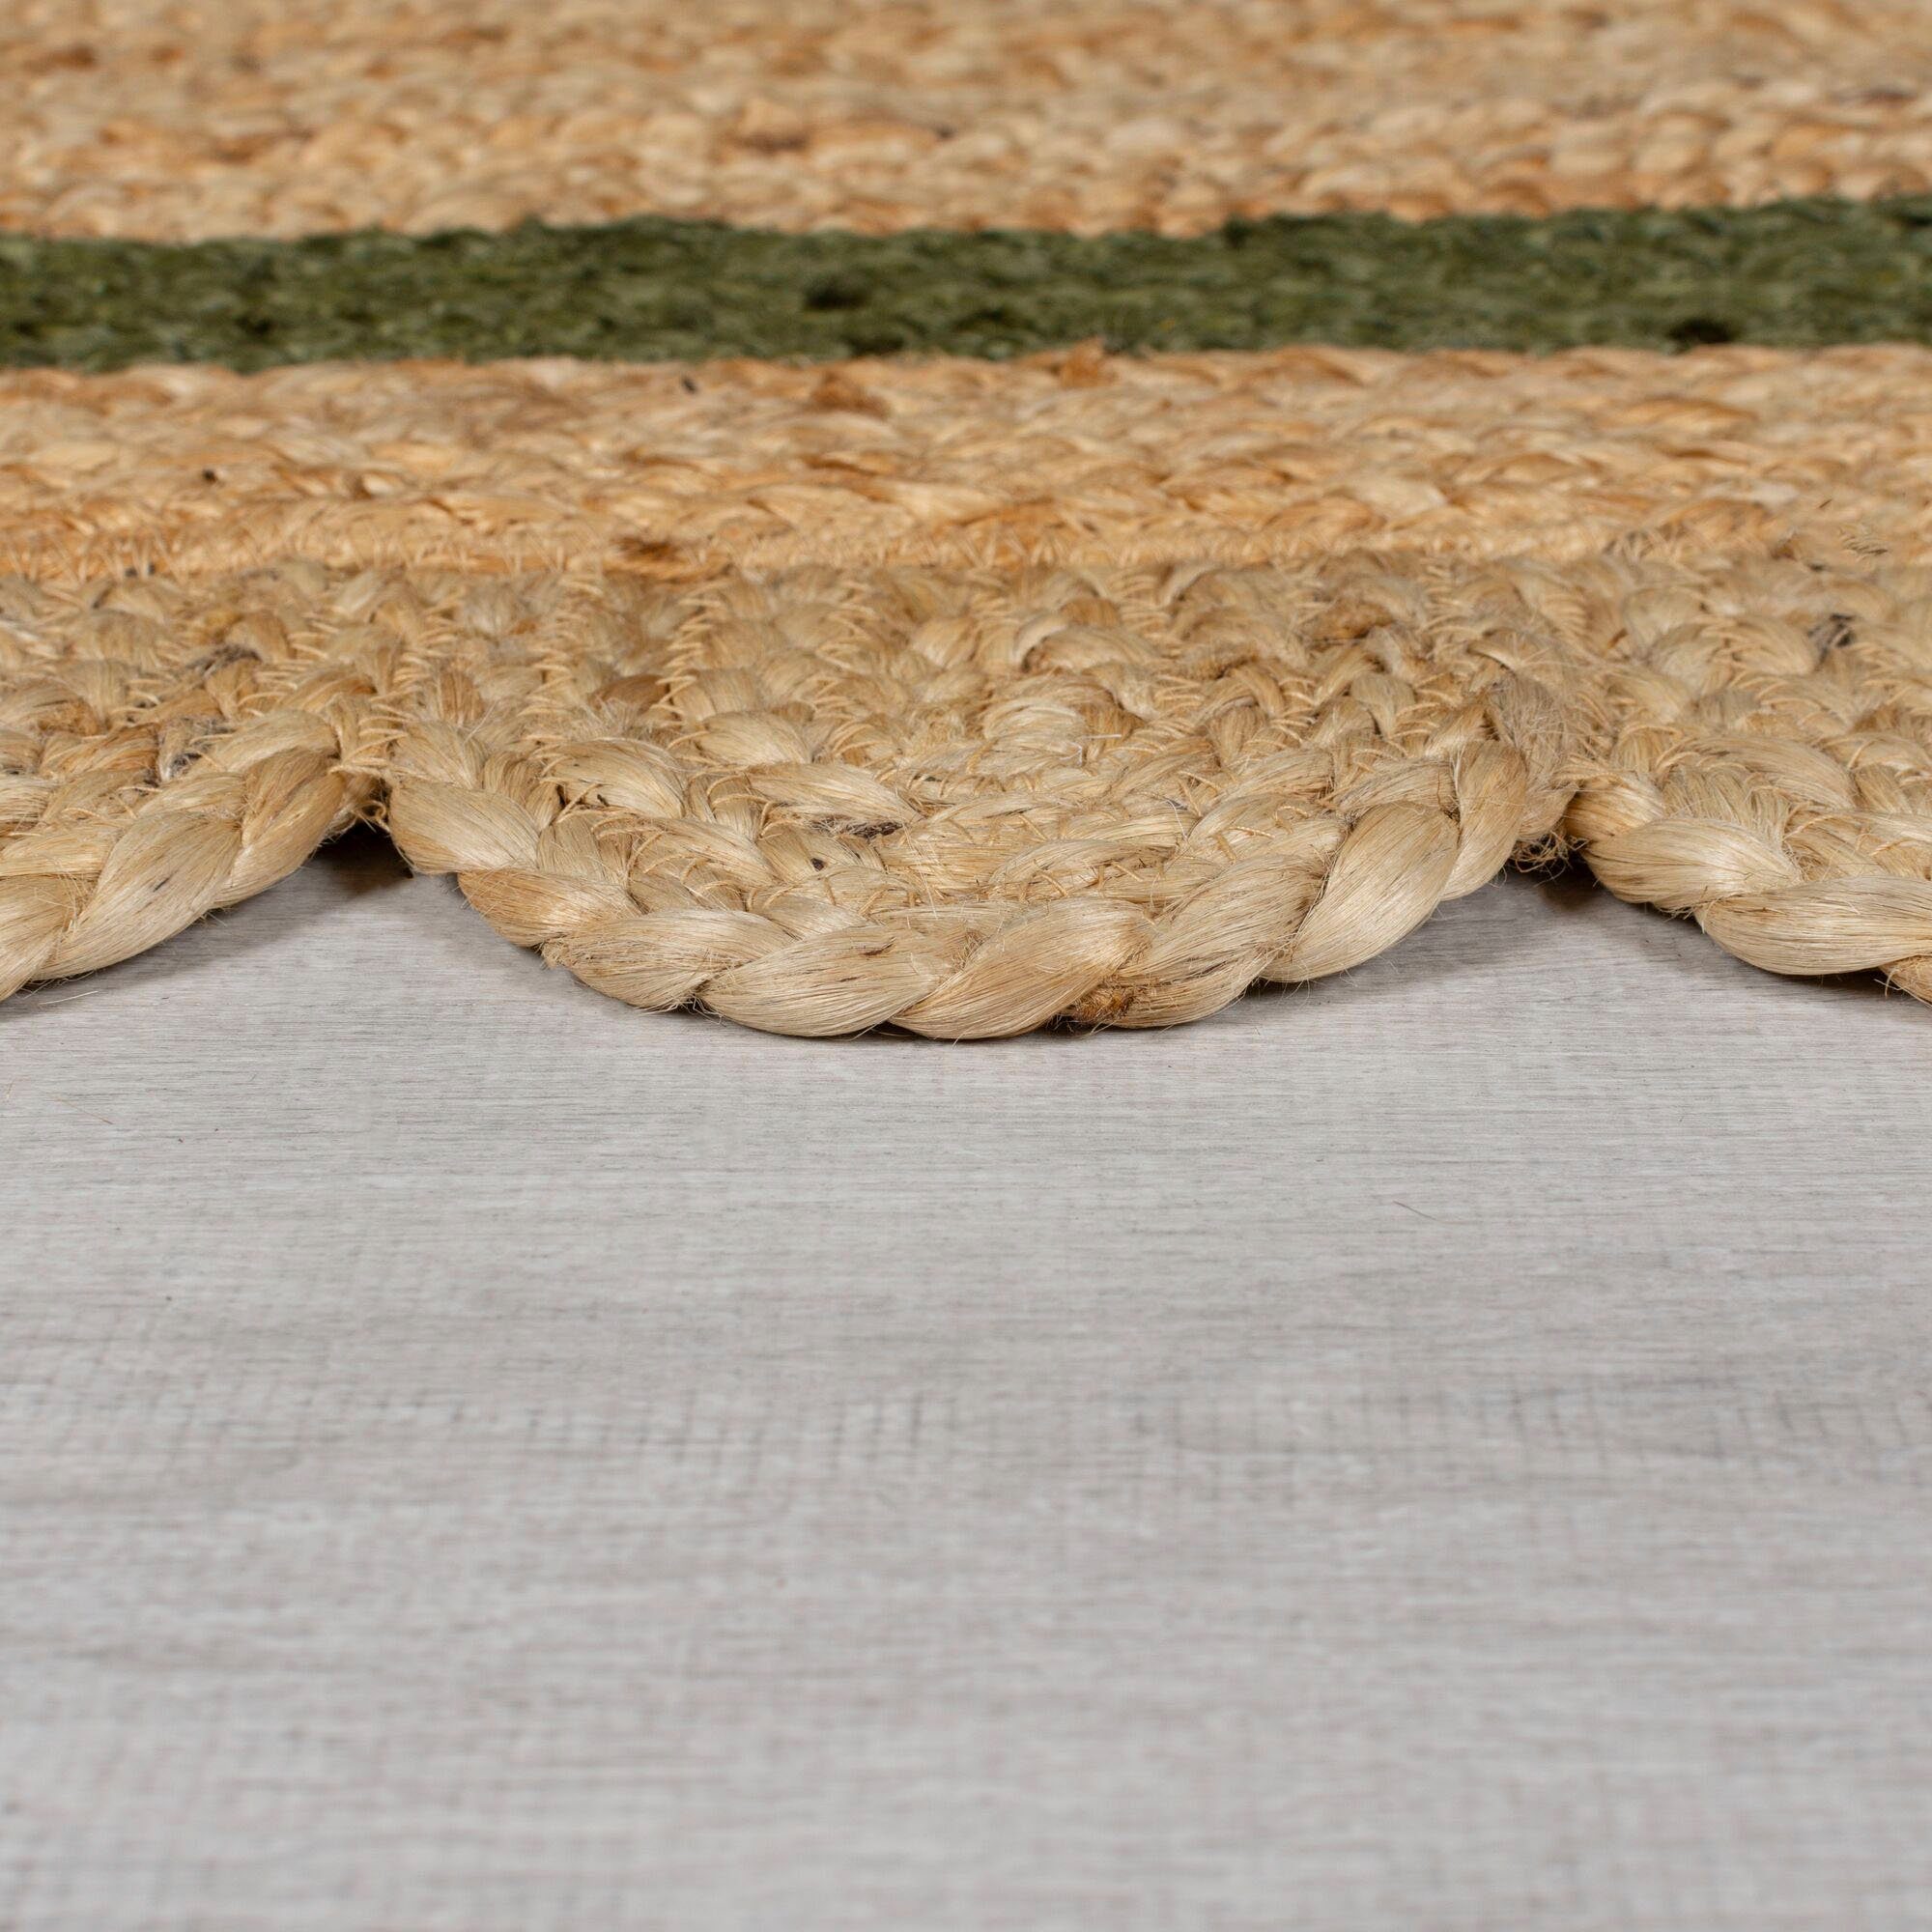 Teppich Grace, FLAIR RUGS, 7 mm, Bordüre 100% Höhe: Grün fußbodenheizungsgeeignet, rechteckig, Jute, mit aus